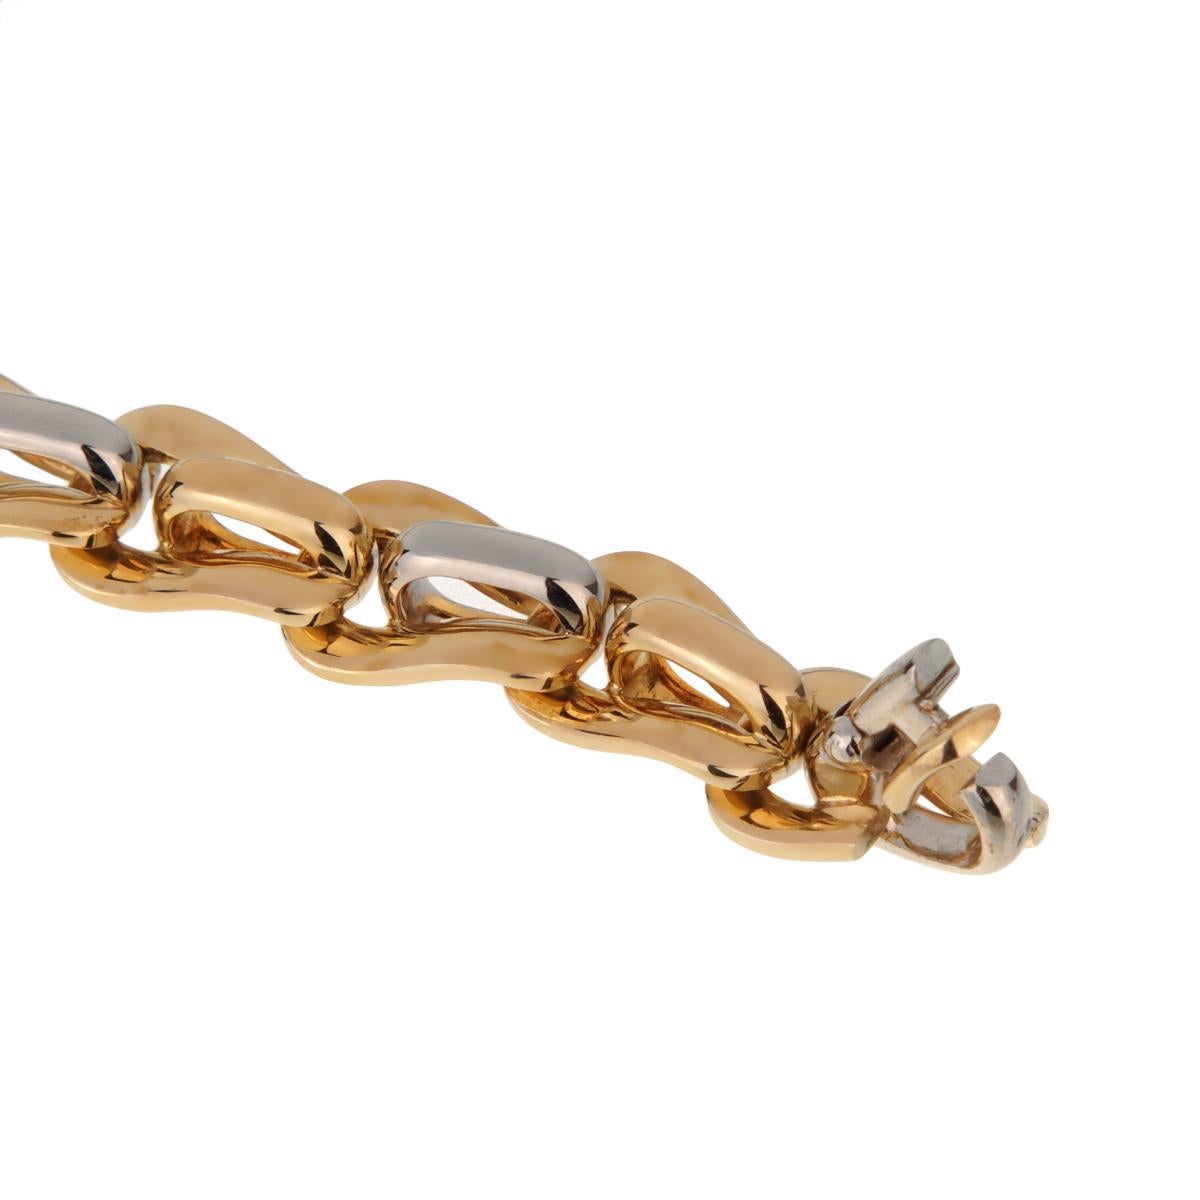 Un magnifique bracelet à maillons vintage Pomellato, avec des maillons alternés en or blanc et jaune, en or 18k. Cet impressionnant bracelet mesure 7,5